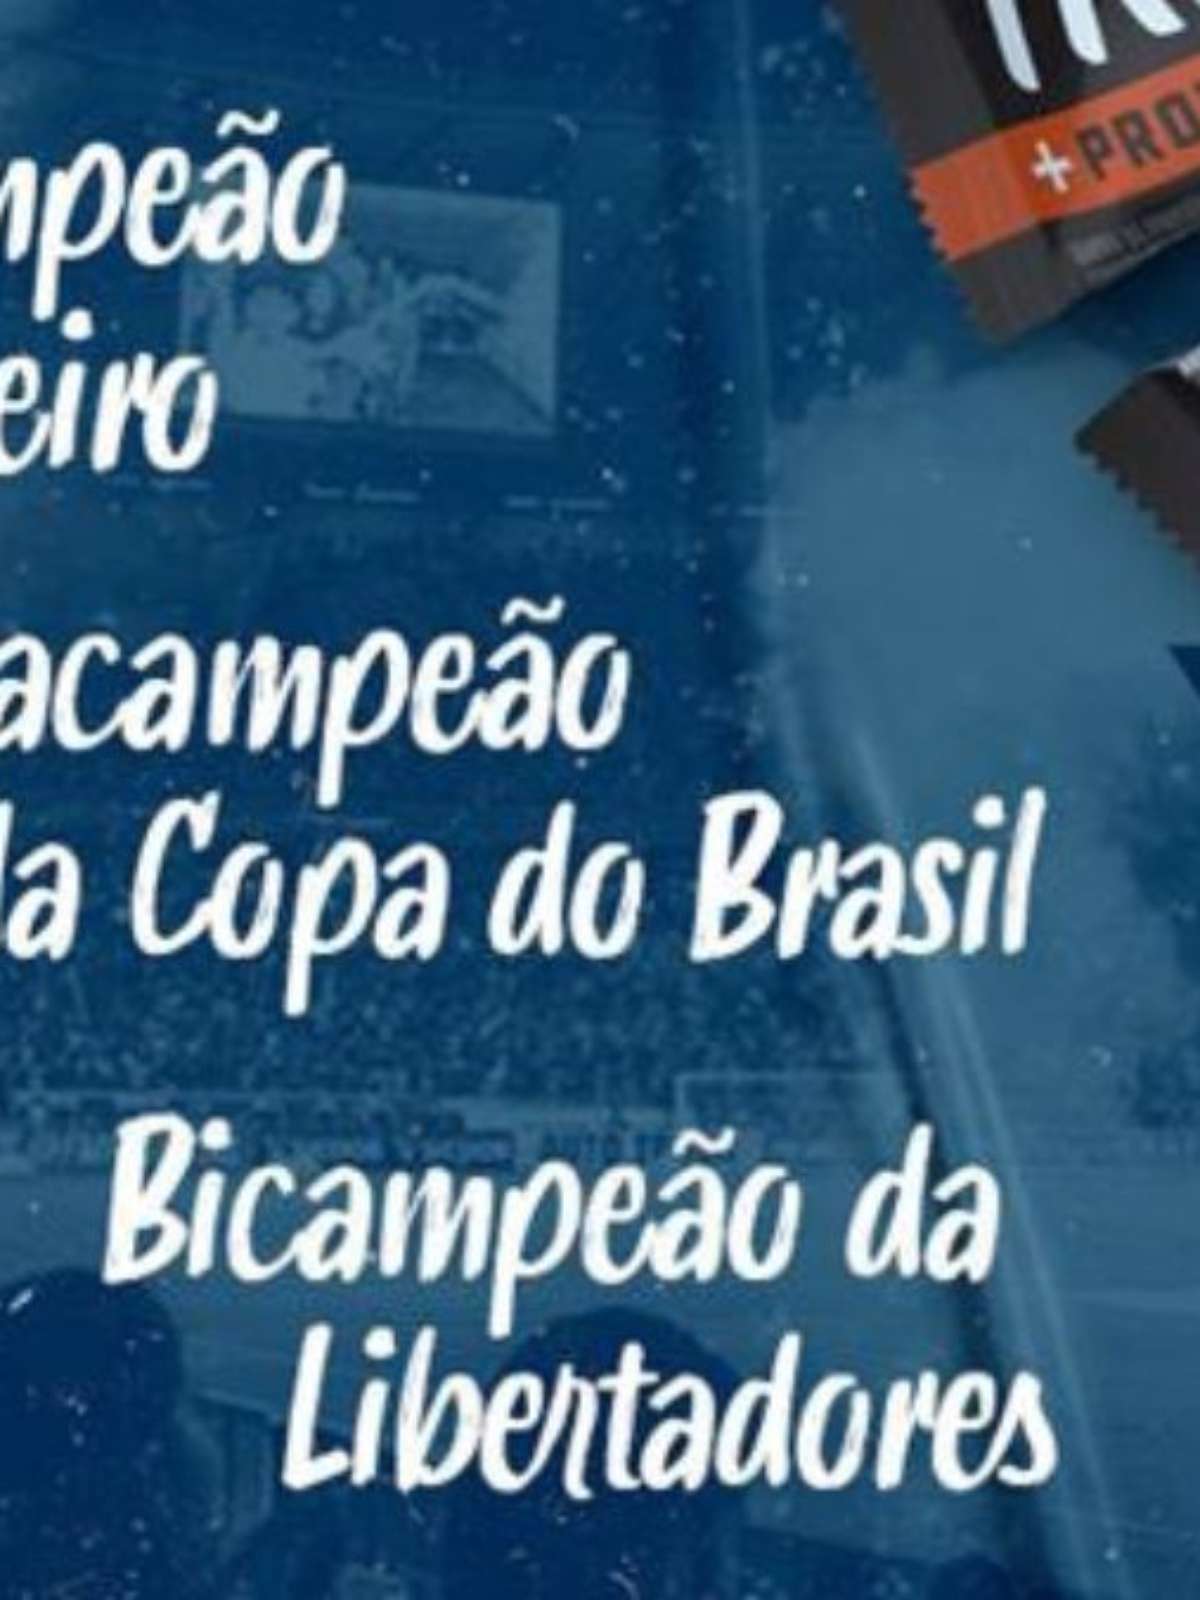 Cruzeiro se dá melhor com arrecadação do que Galo